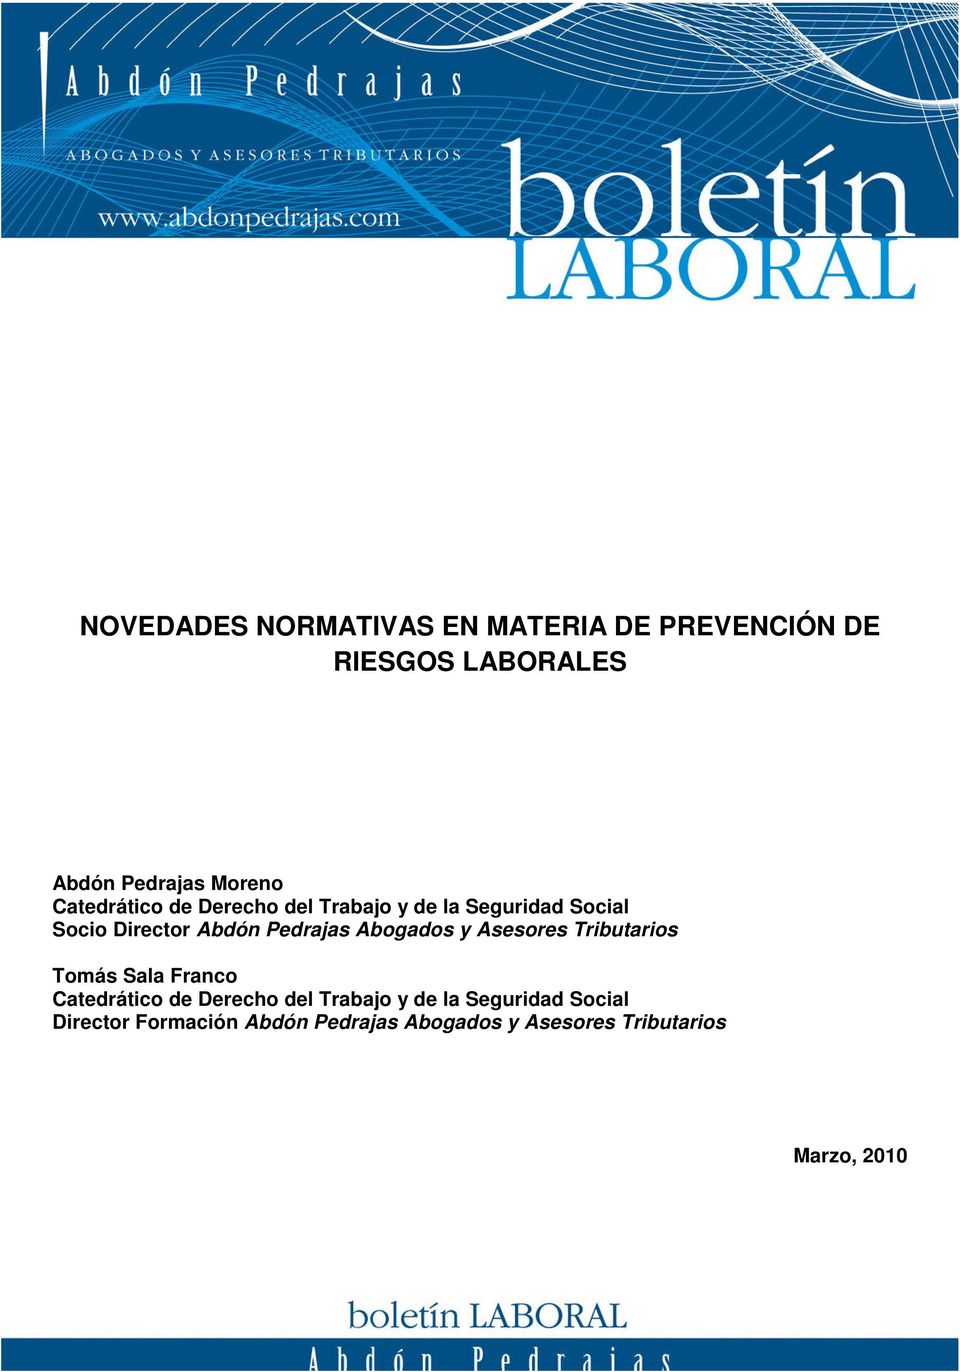 Abogados y Asesores Tributarios Tomás Sala Franco Catedrático de Derecho del Trabajo y de